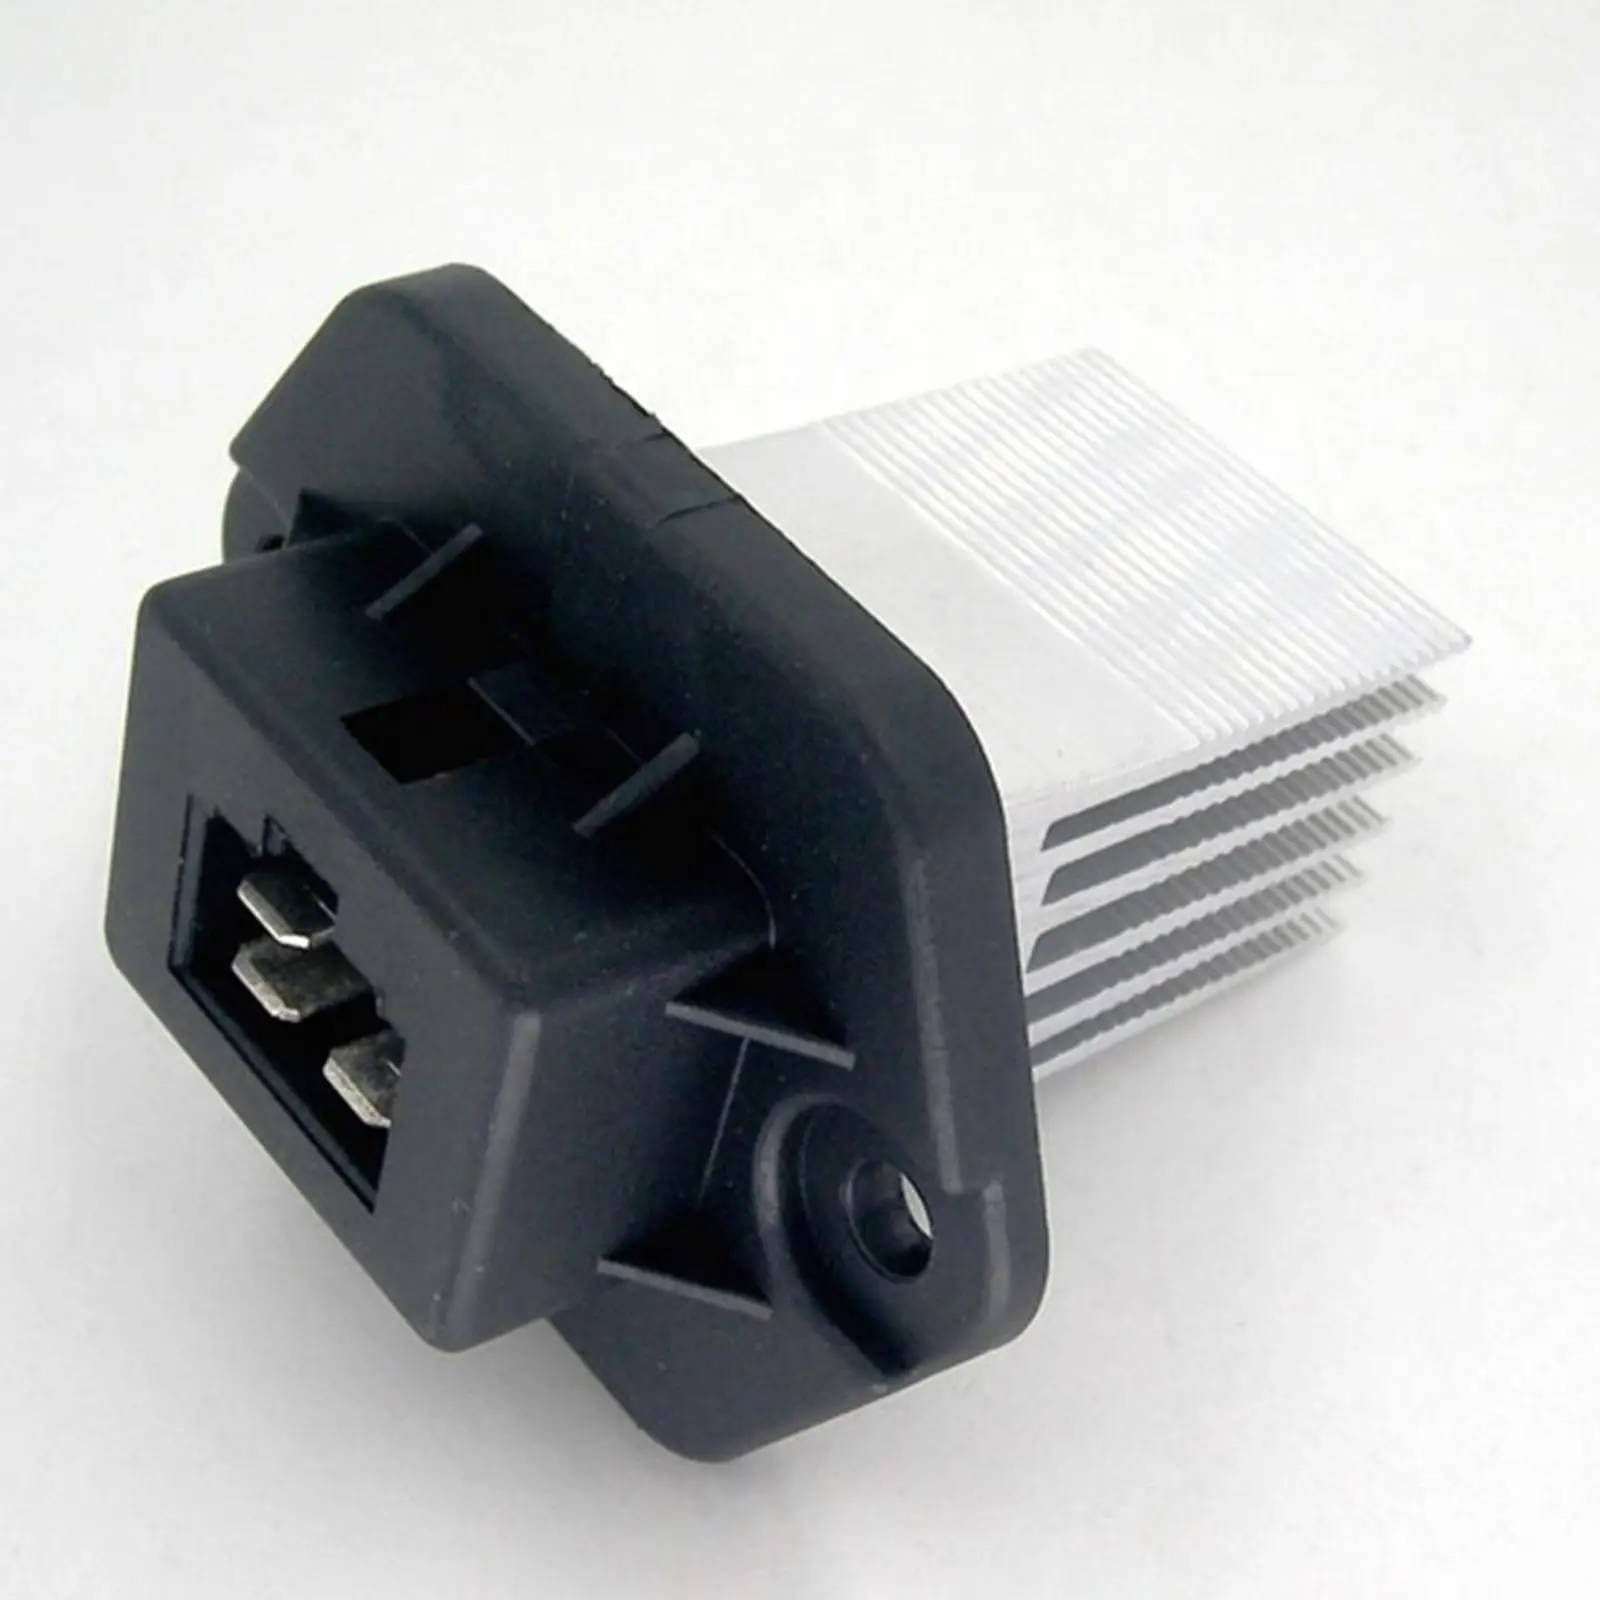 Car  Blower Motor Resistor Replacement for   KIA   97179-1F200